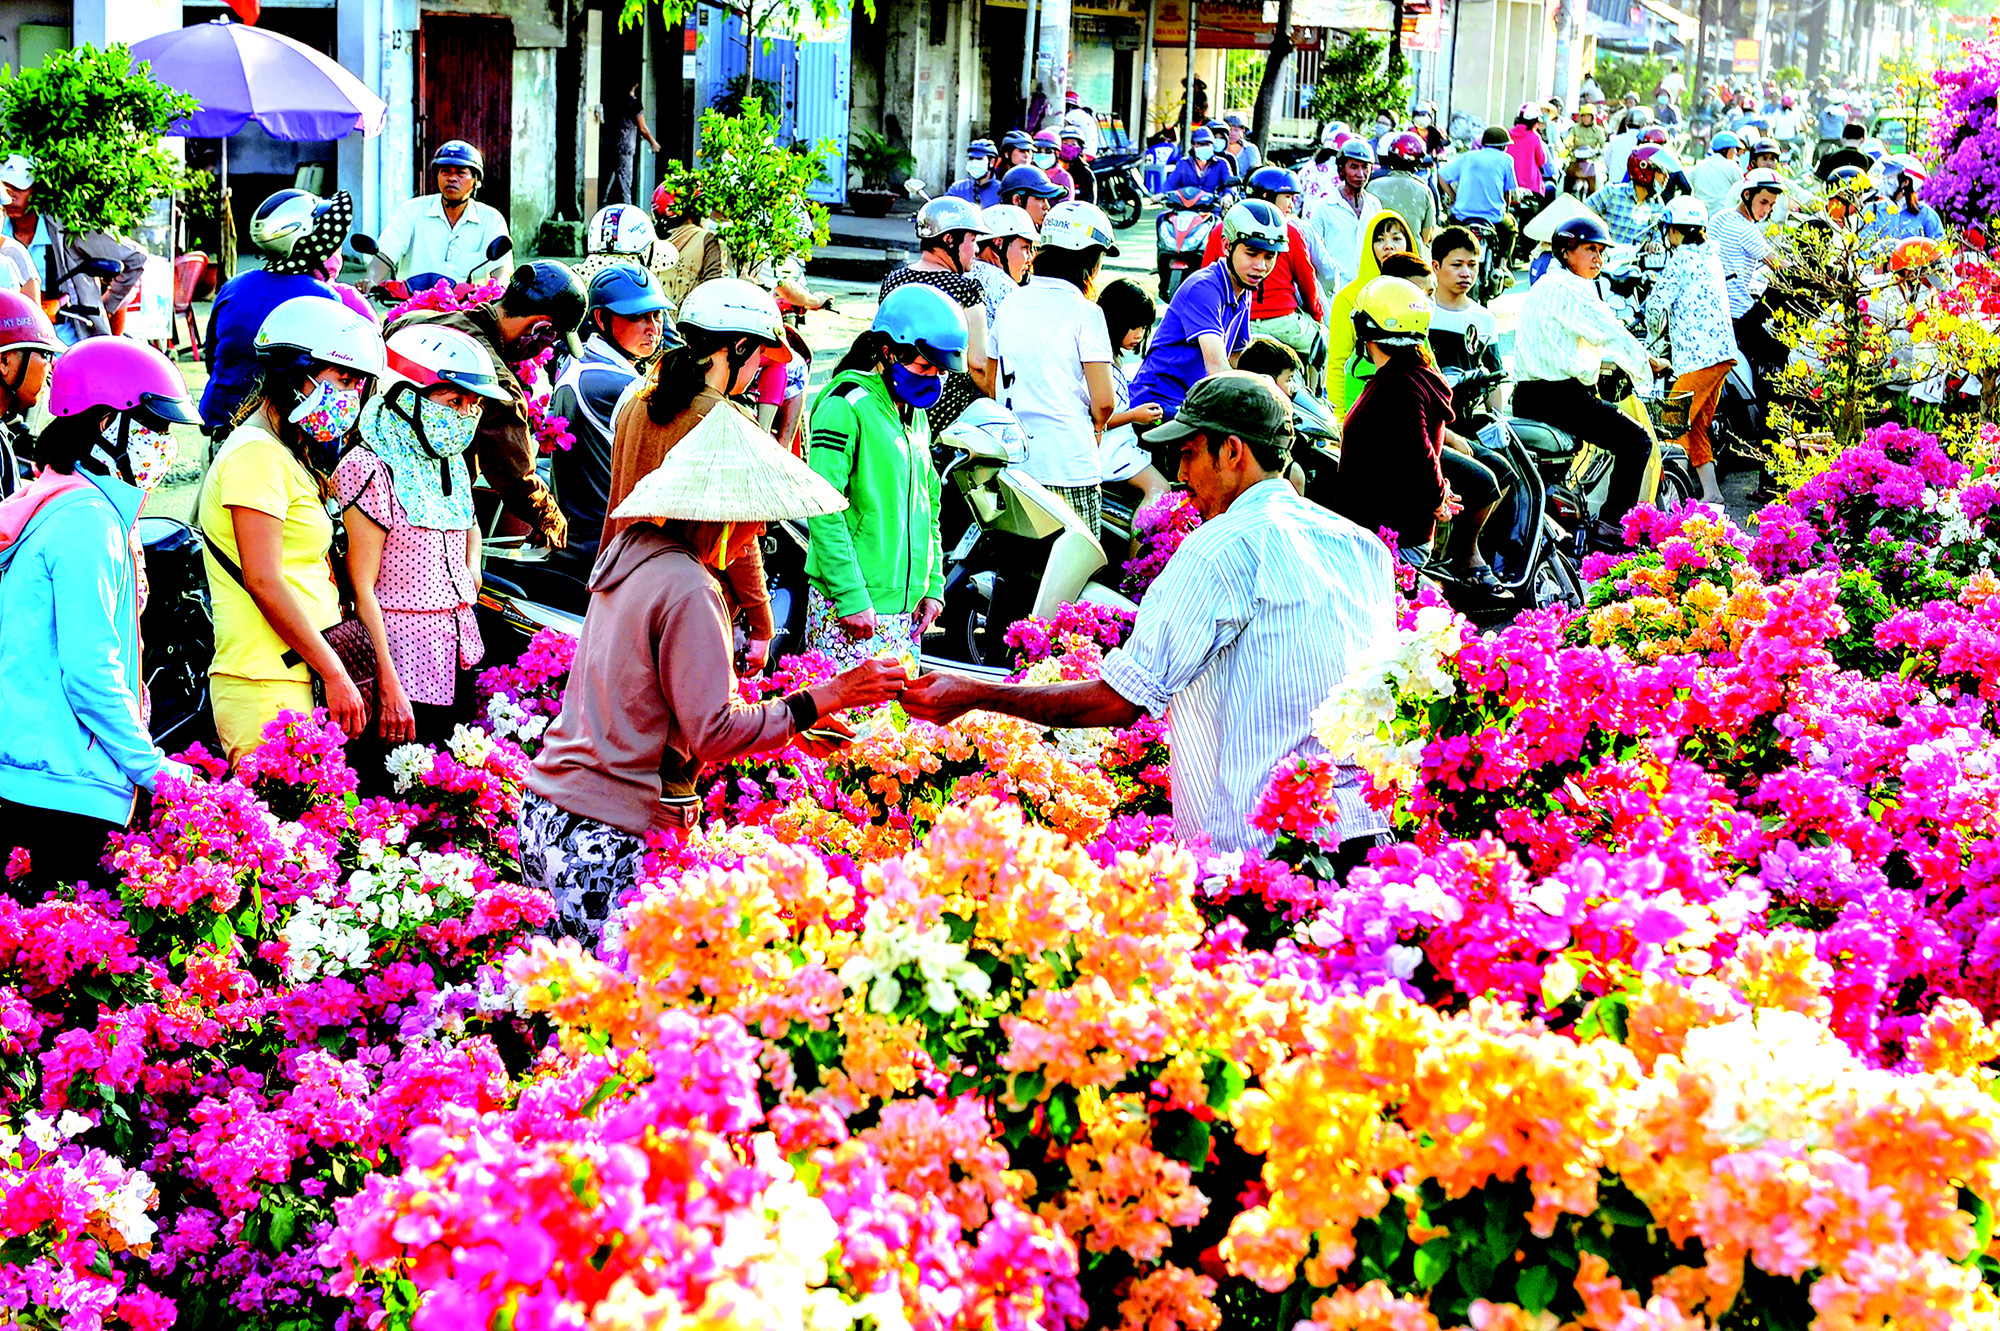 Chợ Tết quả là một bầu không khí sôi động, tưng bừng, tràn đầy sự khắc nghiệt. Chợ Tết với những quầy hàng đa dạng, cảnh quan hấp dẫn, rất dễ khiến cho bạn bị lạc trong thế giới cảnh quan của mùa xuân. Hãy đến chợ Tết và nhận biết một phần của nền văn hóa độc đáo của Việt Nam.